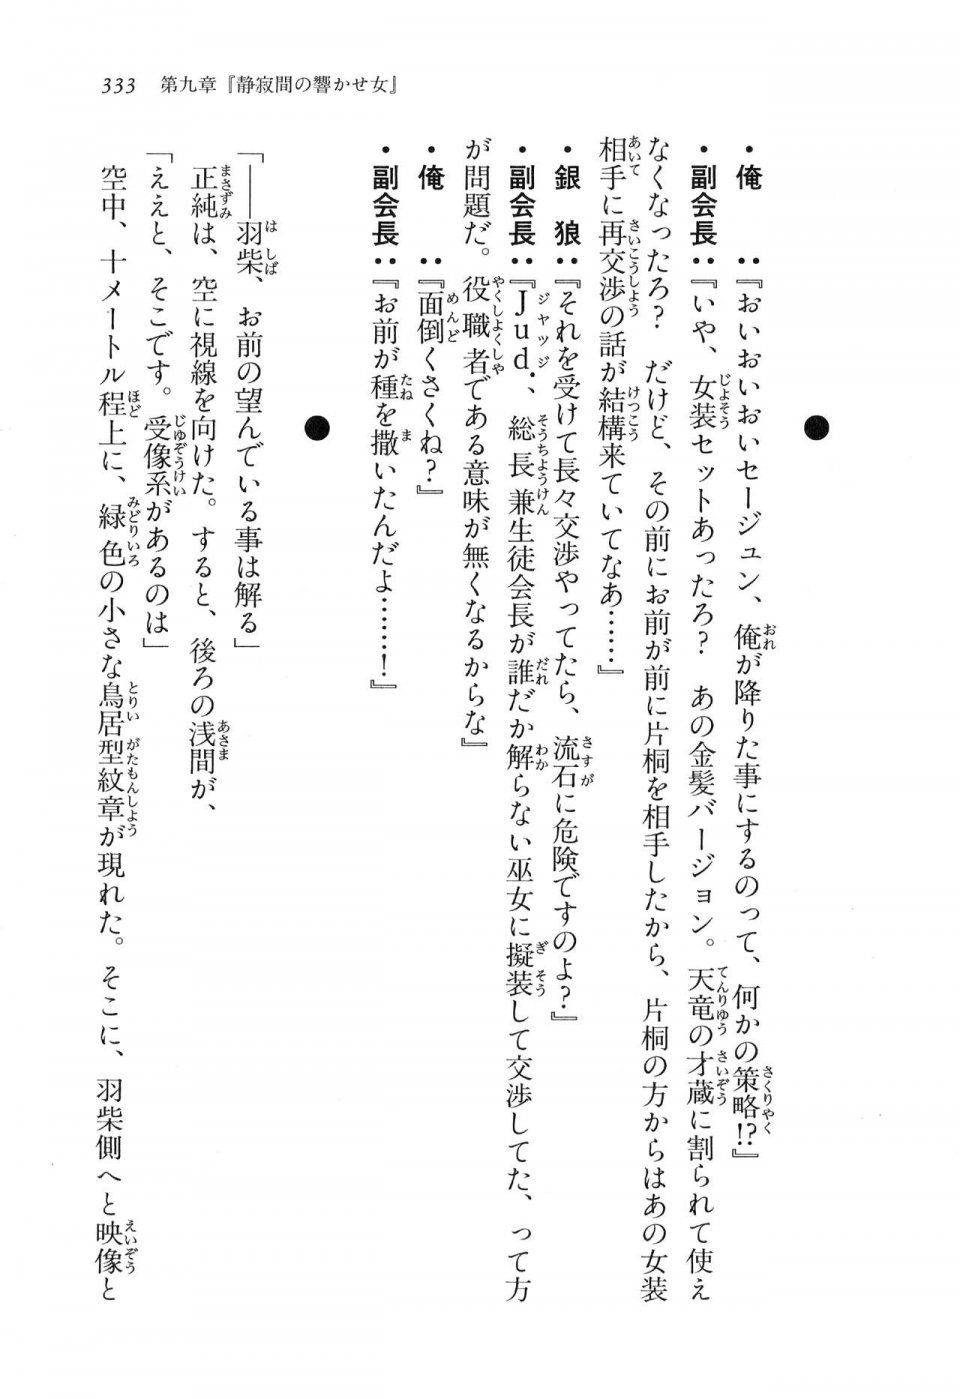 Kyoukai Senjou no Horizon LN Vol 16(7A) - Photo #333